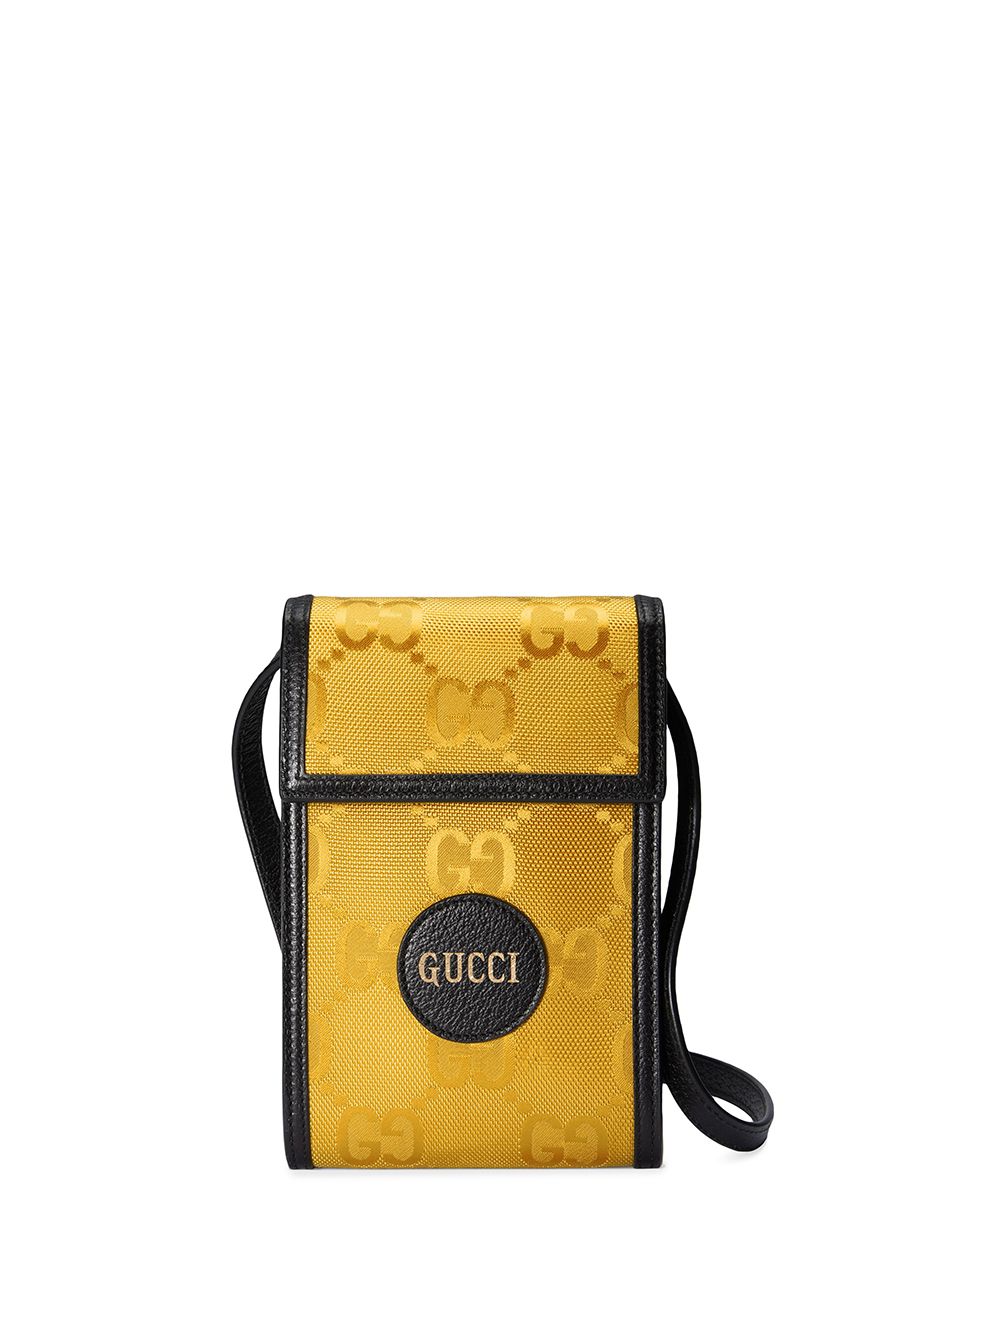 фото Gucci чехол для телефона gucci off the grid